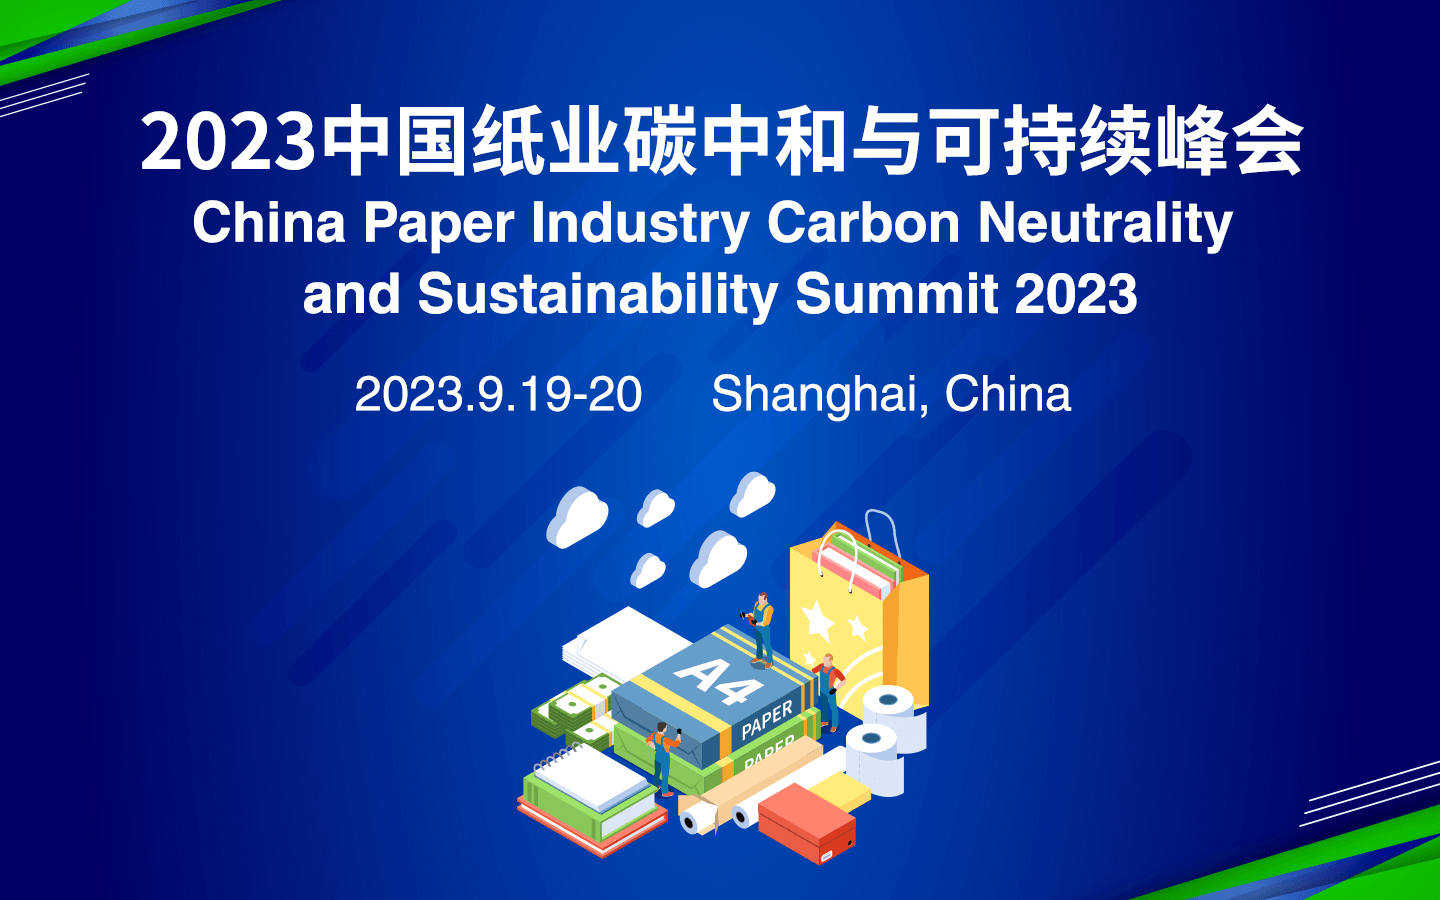 2023中國紙業碳中和與可持續峰會